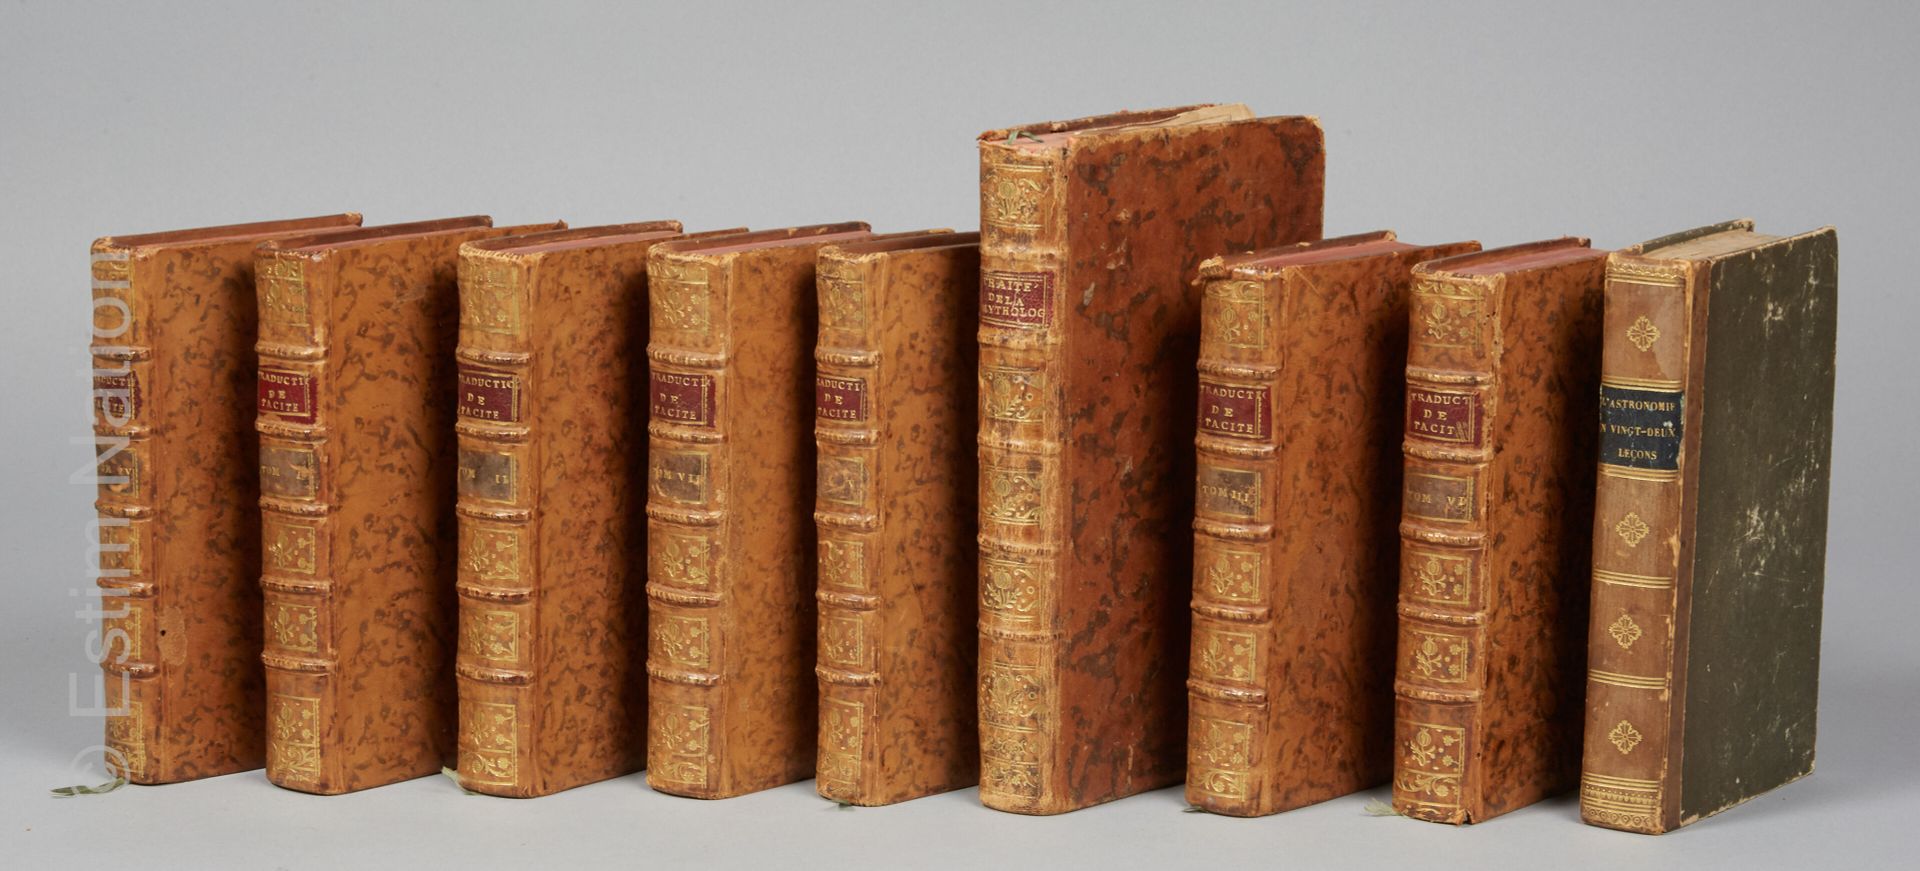 LITTÉRATURE ET DIVERS TACITE, traduction complète, chez Moutard, à Paris, 1789.
&hellip;